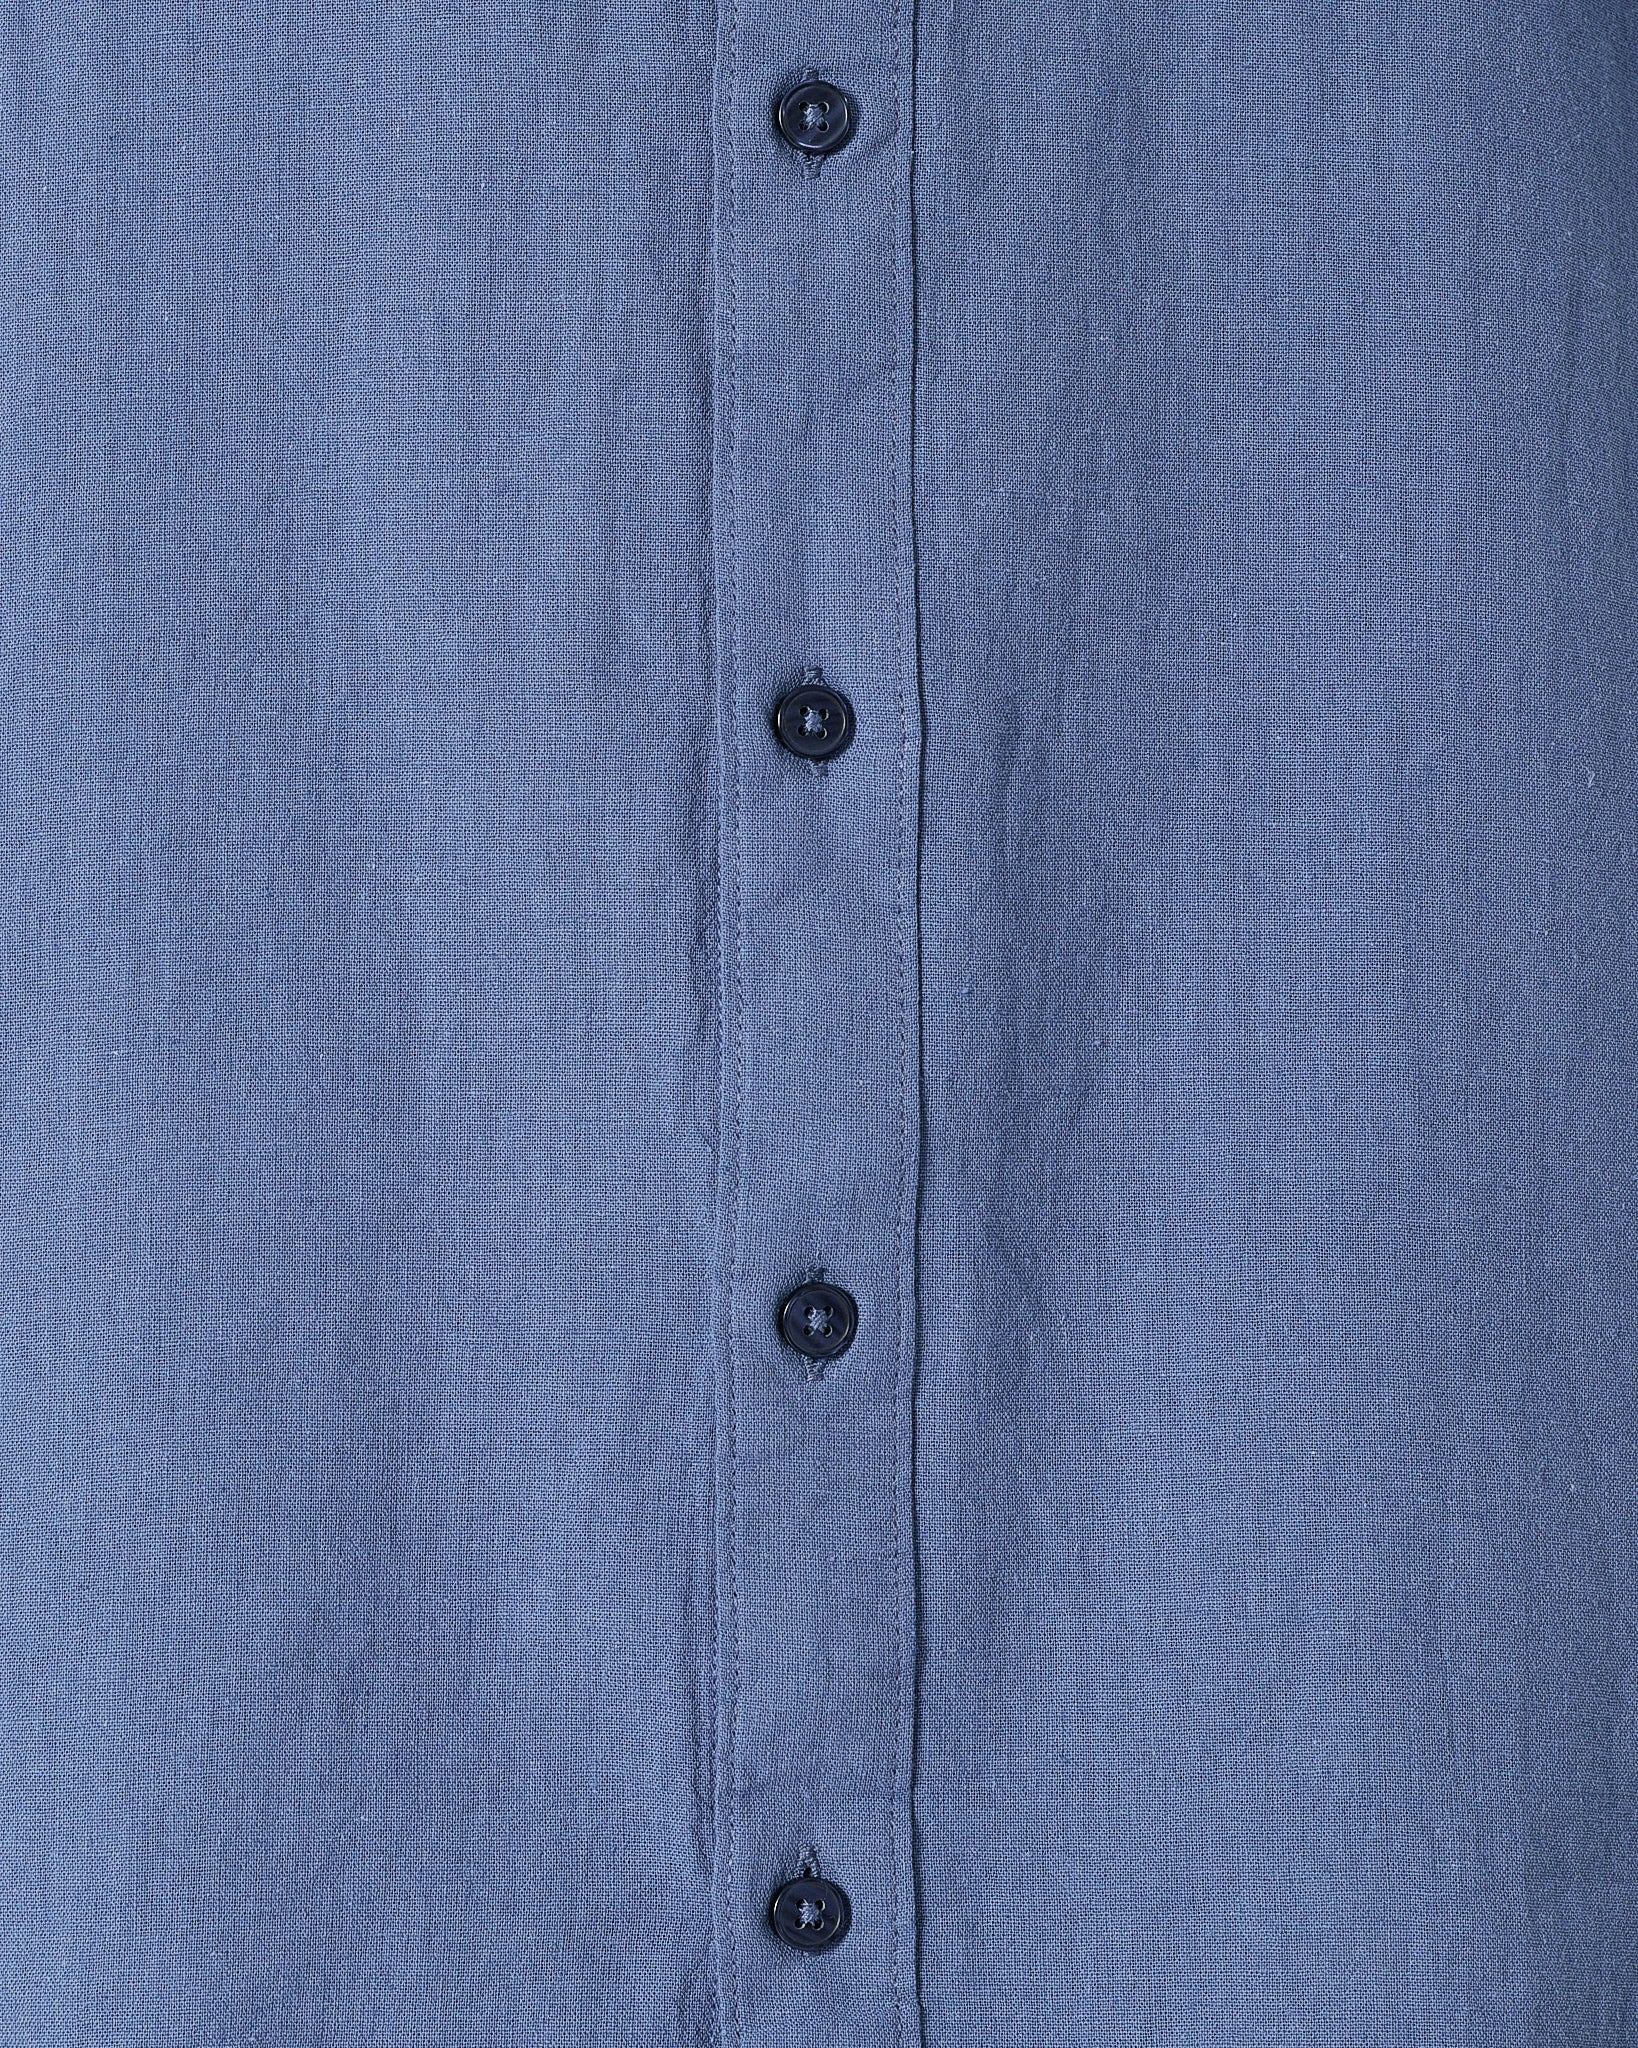 RL Casual Linen Men Blue Shirts Short Sleeve 20.90